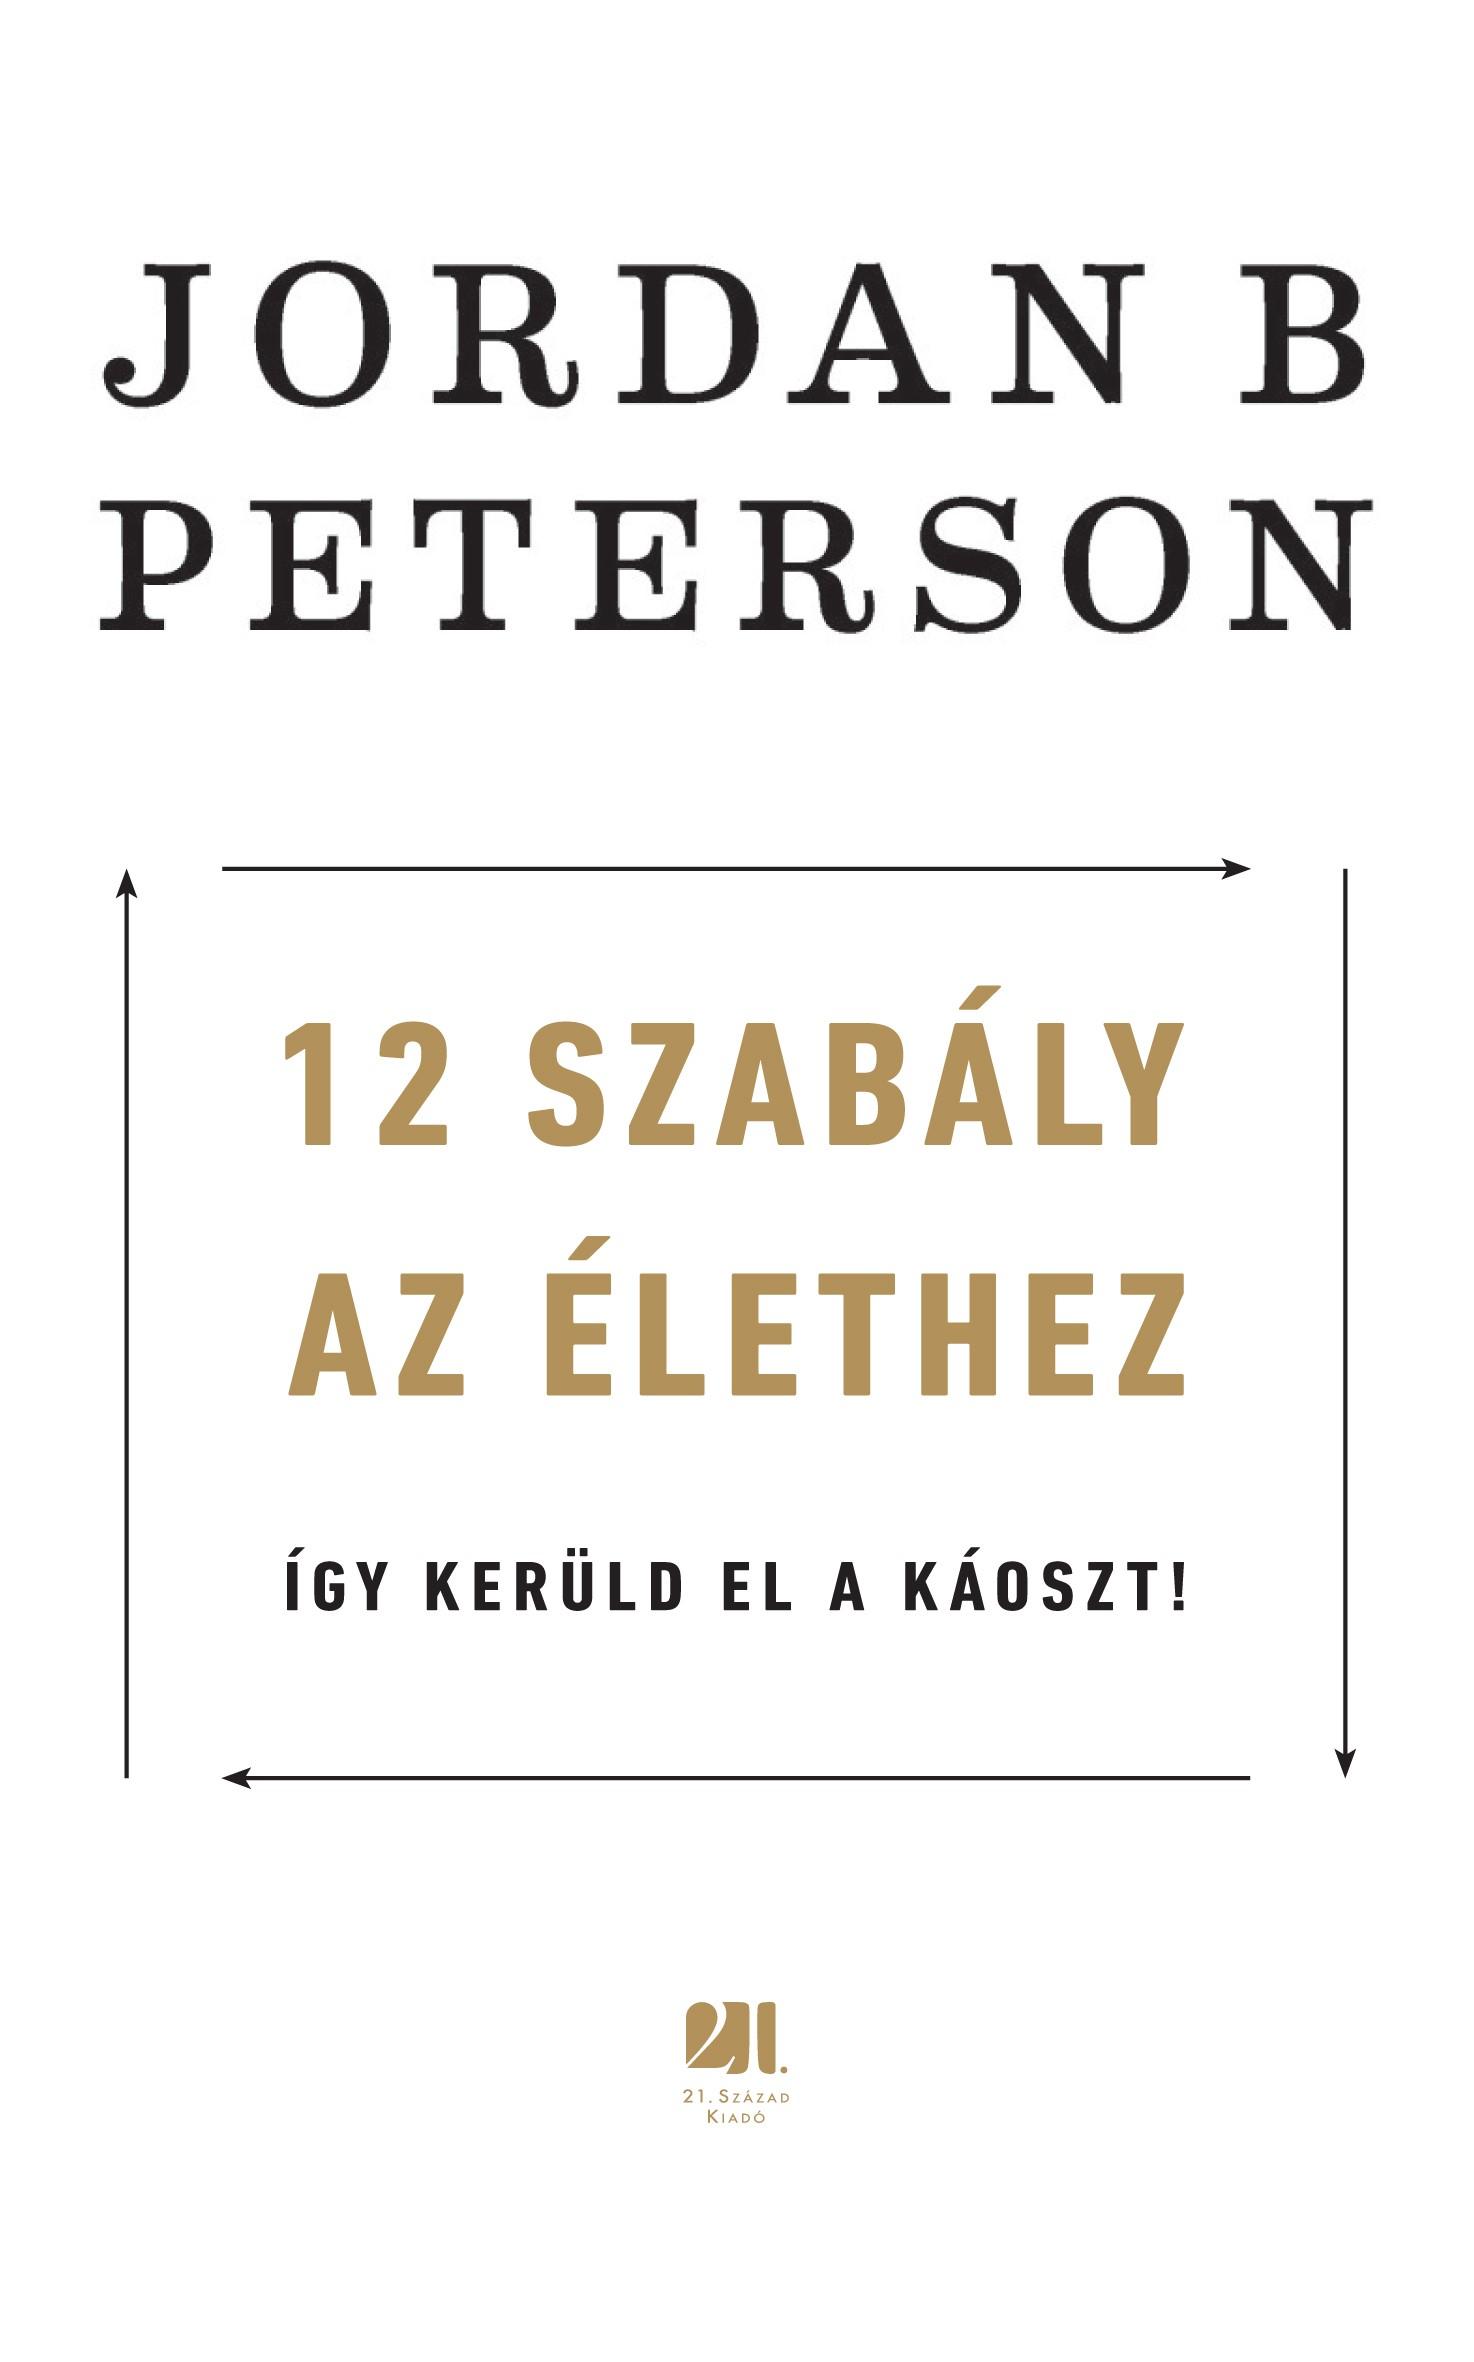 PETERSON, JORDAN B. - 12 SZABLY AZ LETHEZ - GY KERLD EL A KOSZT!